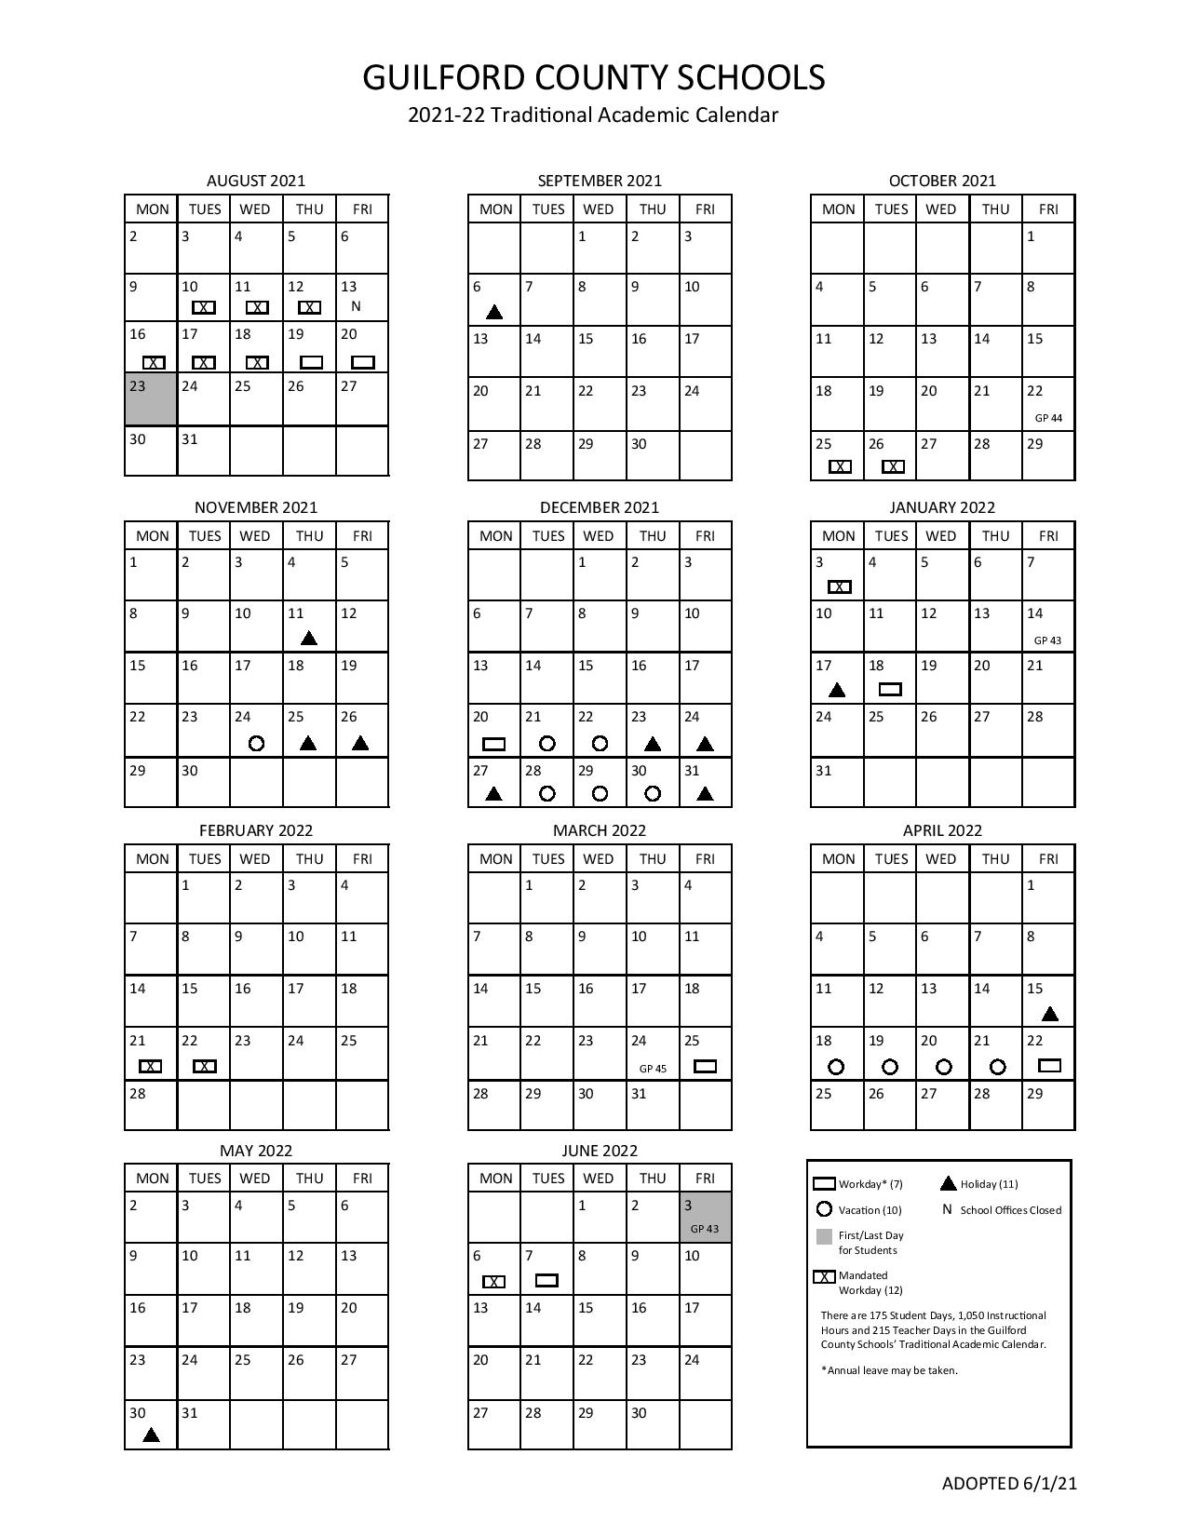 Guilford County School Calendar 2021-2022 In Pdf-2021 And 2022 School Calendar Pdf